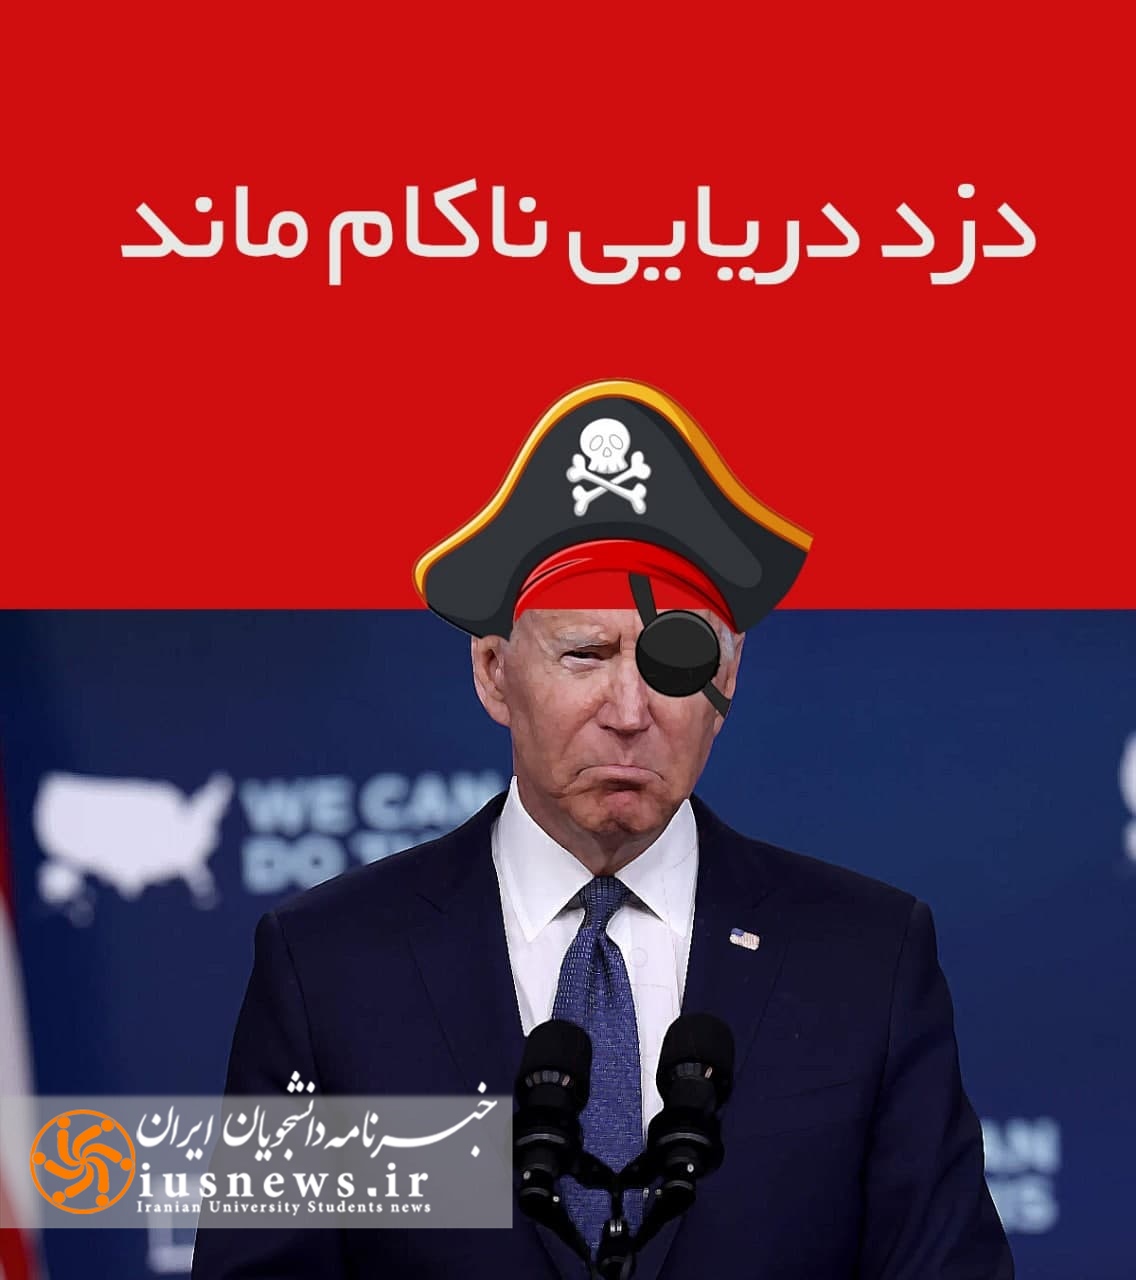 دریایی از اقتدار/ شکست دزدان دریایی آمریکا به روایت تصویر